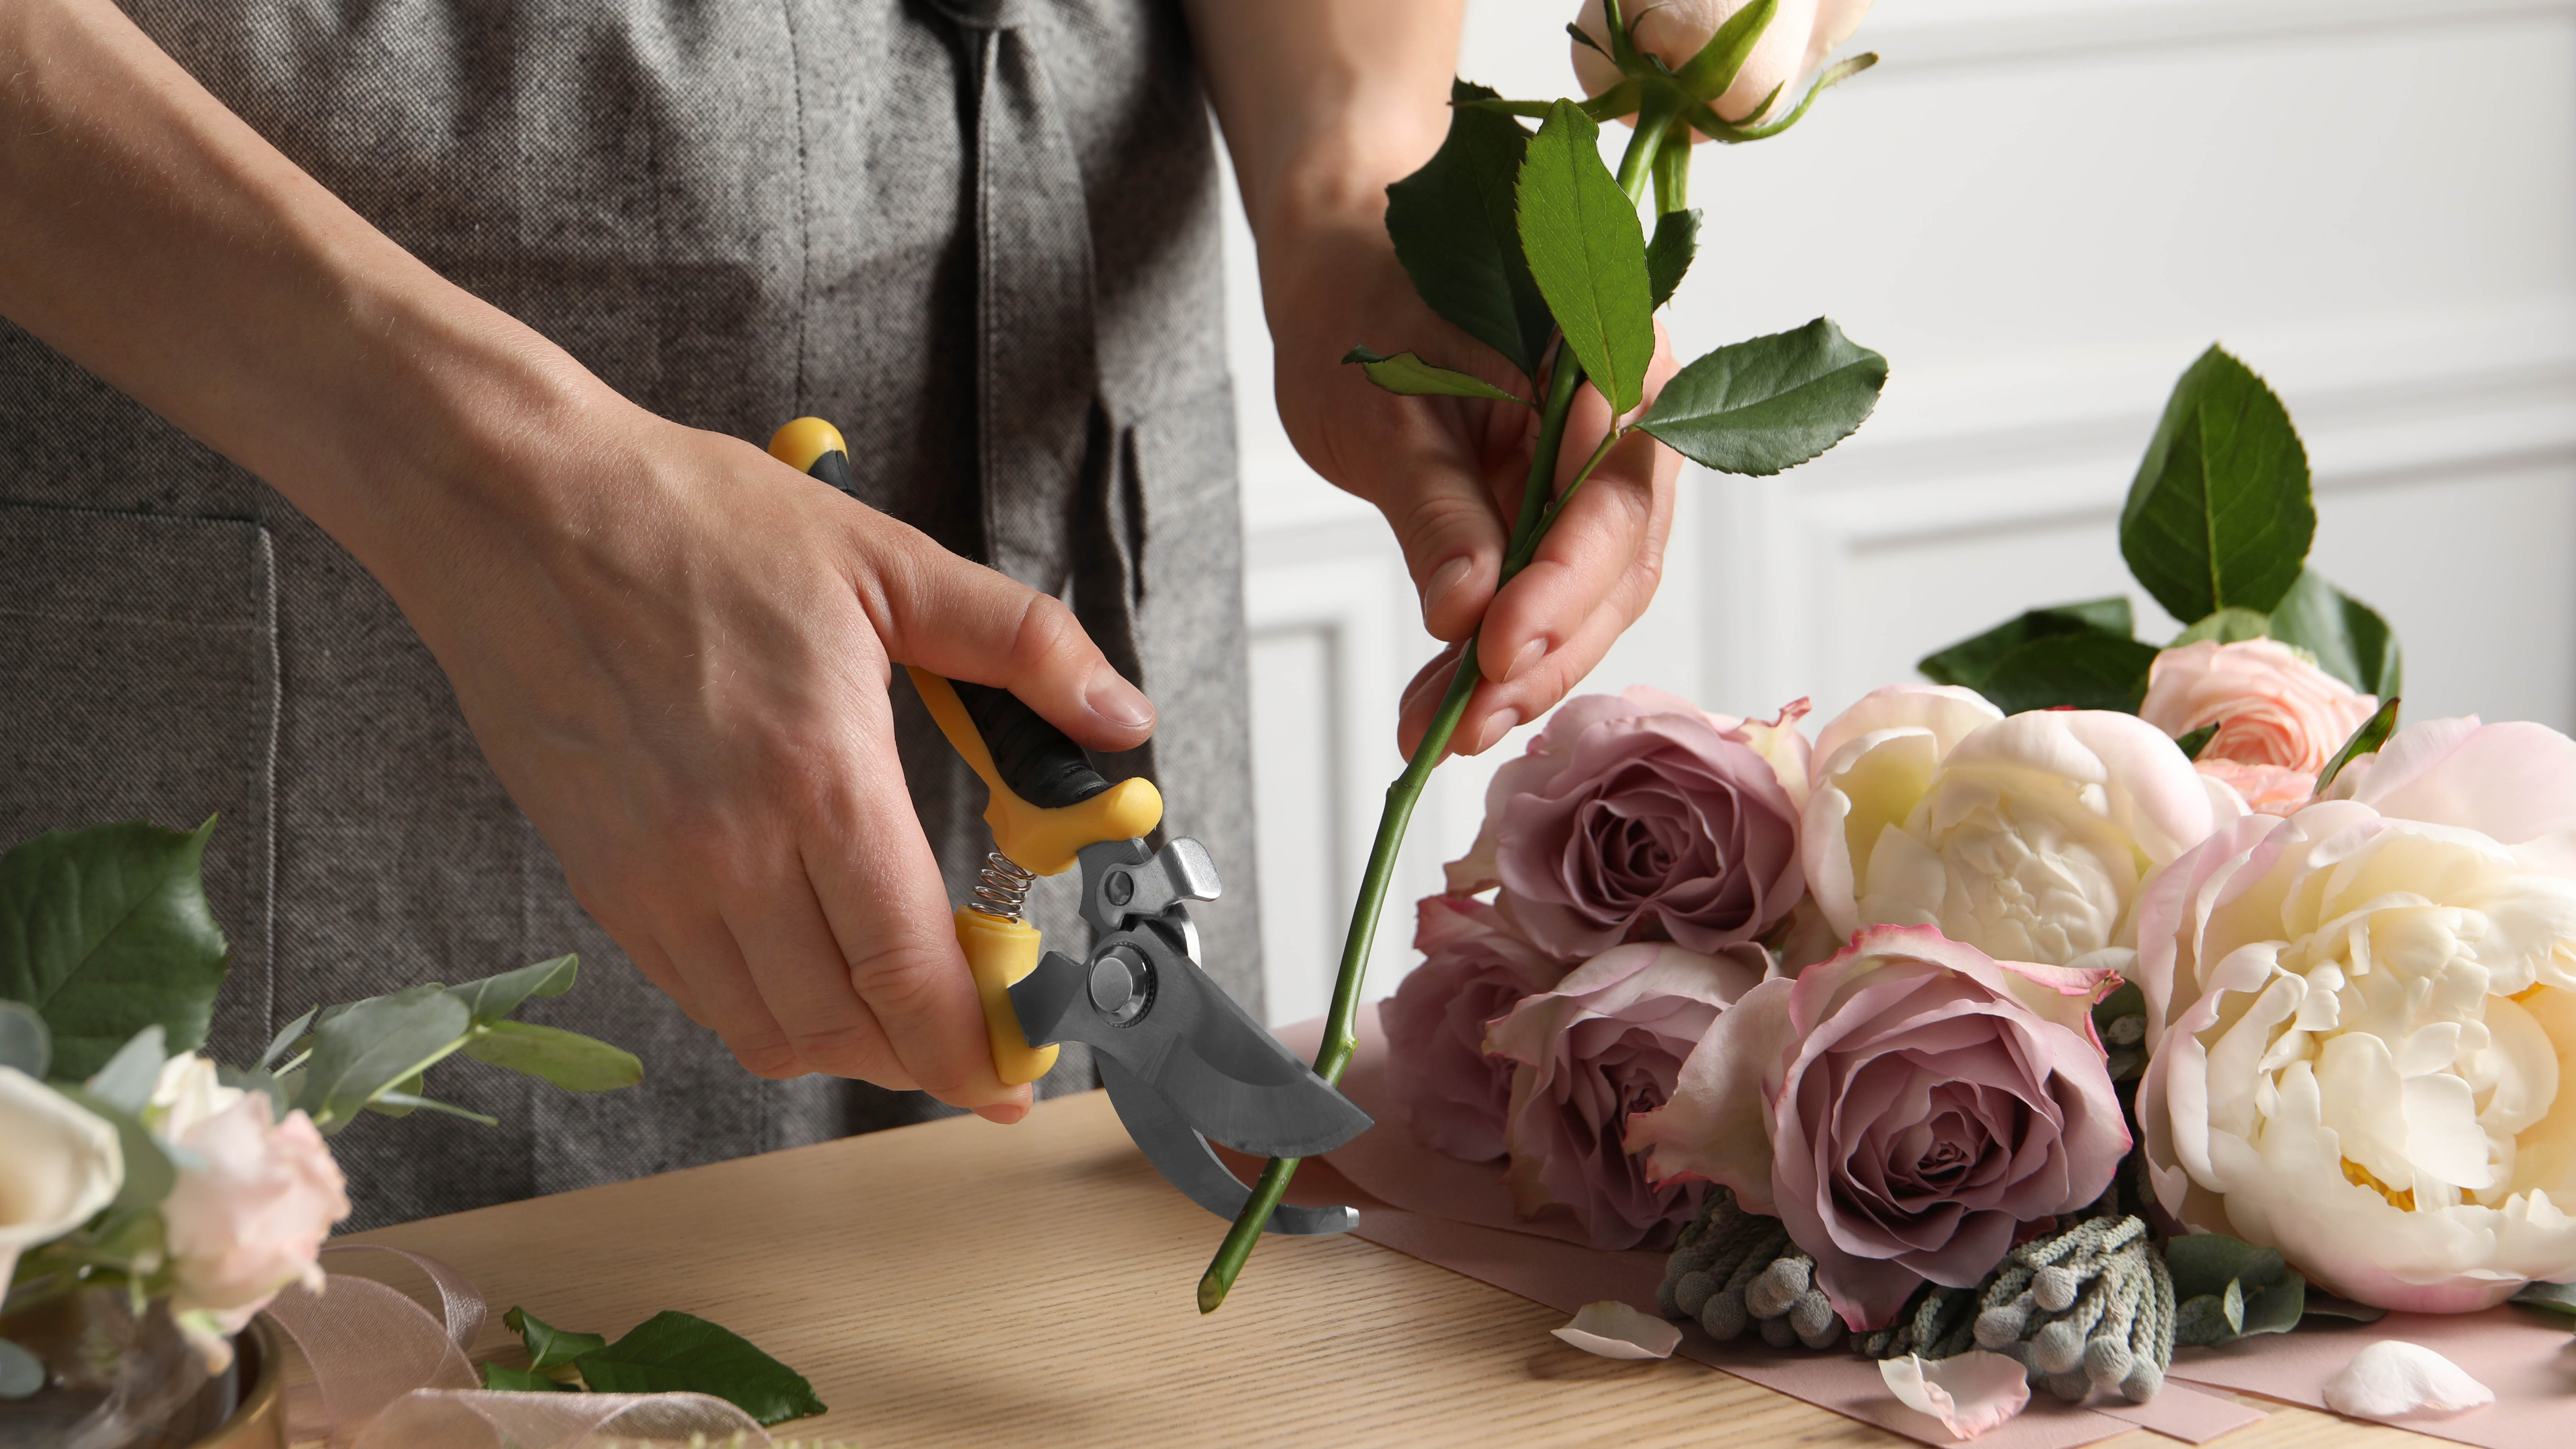 Единственная роза, обрезанная парой секаторов на кухонном столе рядом с букетом роз.